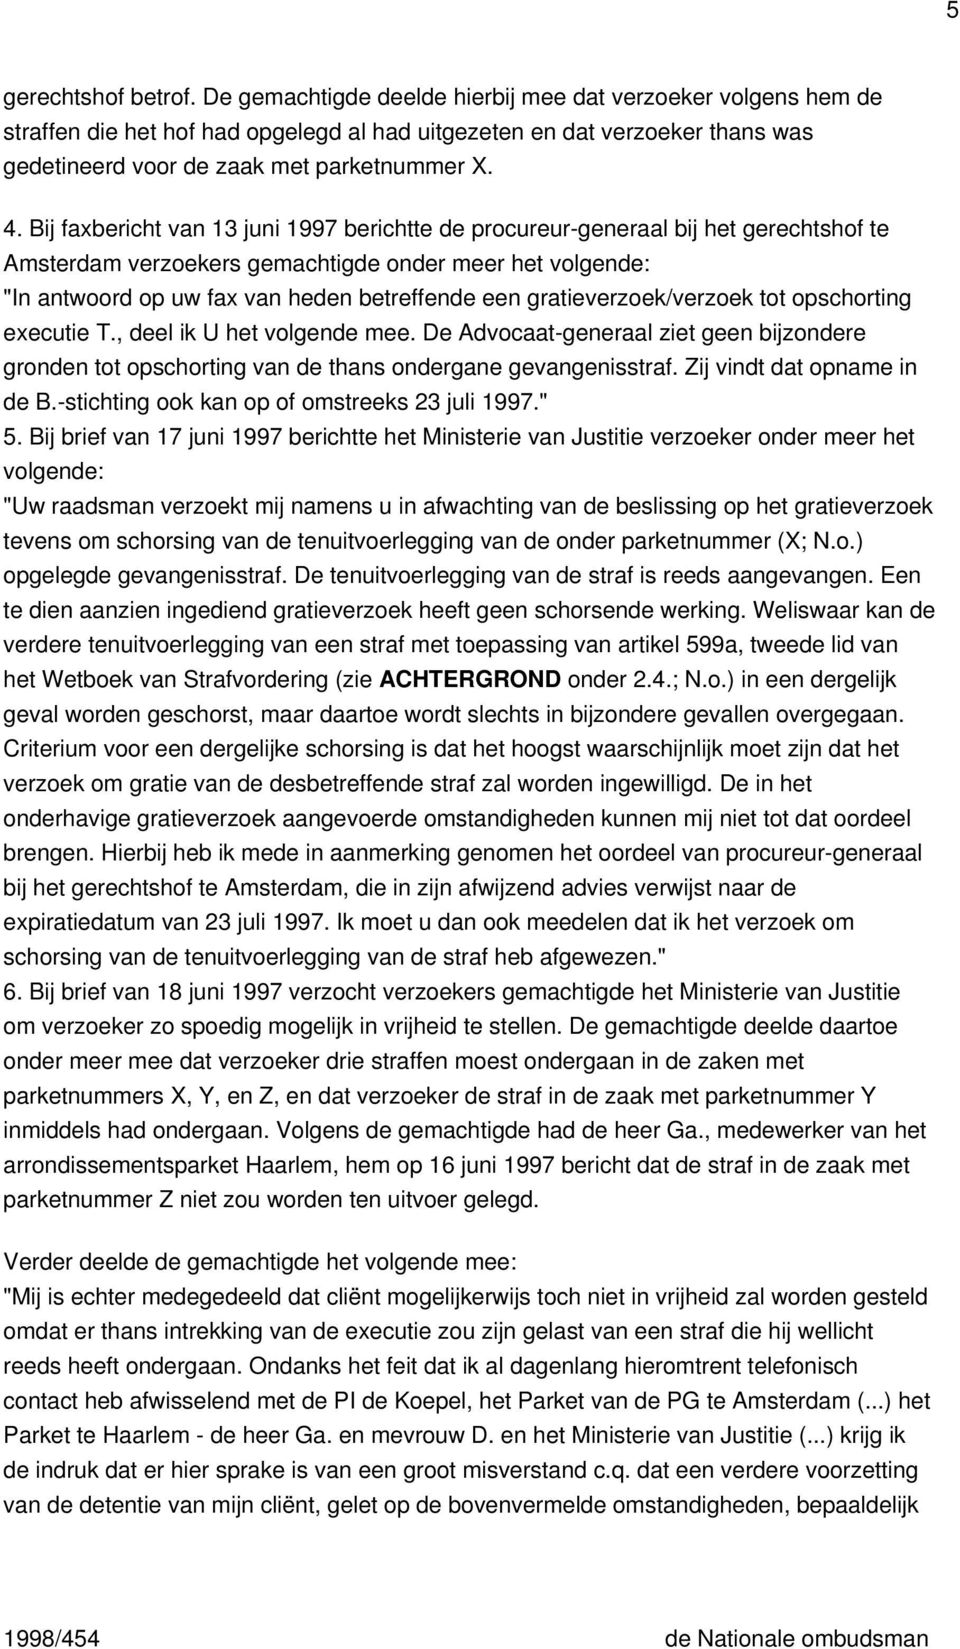 Bij faxbericht van 13 juni 1997 berichtte de procureur-generaal bij het gerechtshof te Amsterdam verzoekers gemachtigde onder meer het volgende: "In antwoord op uw fax van heden betreffende een